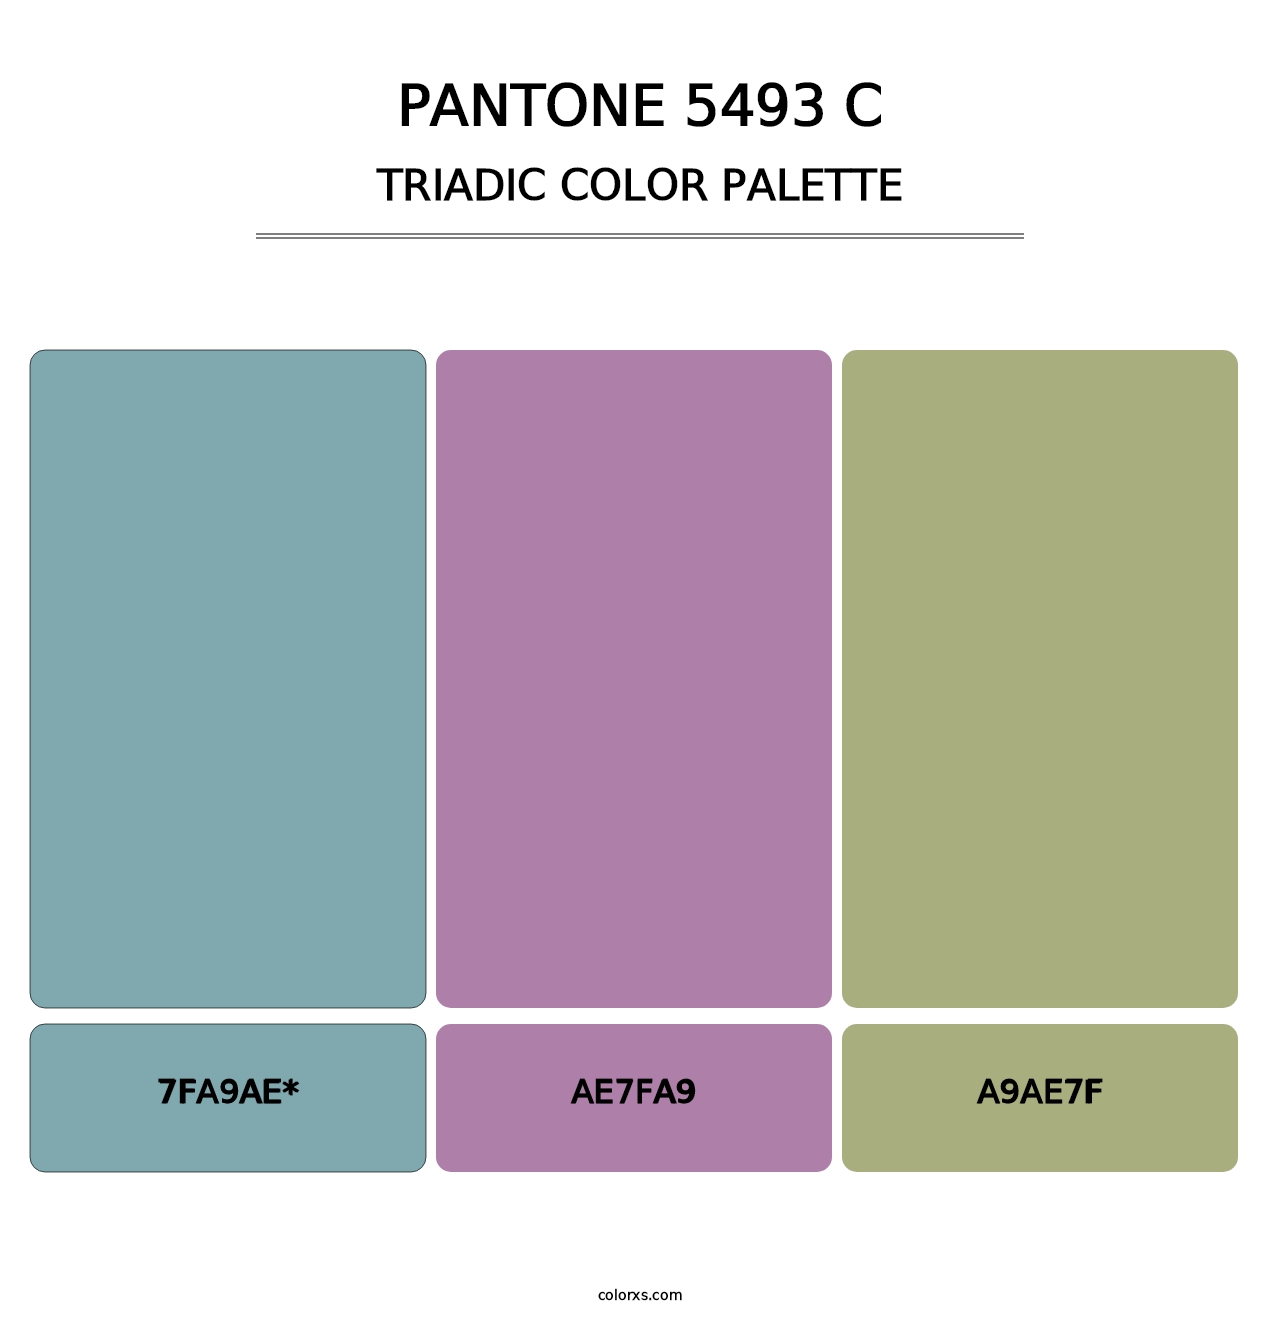 PANTONE 5493 C - Triadic Color Palette